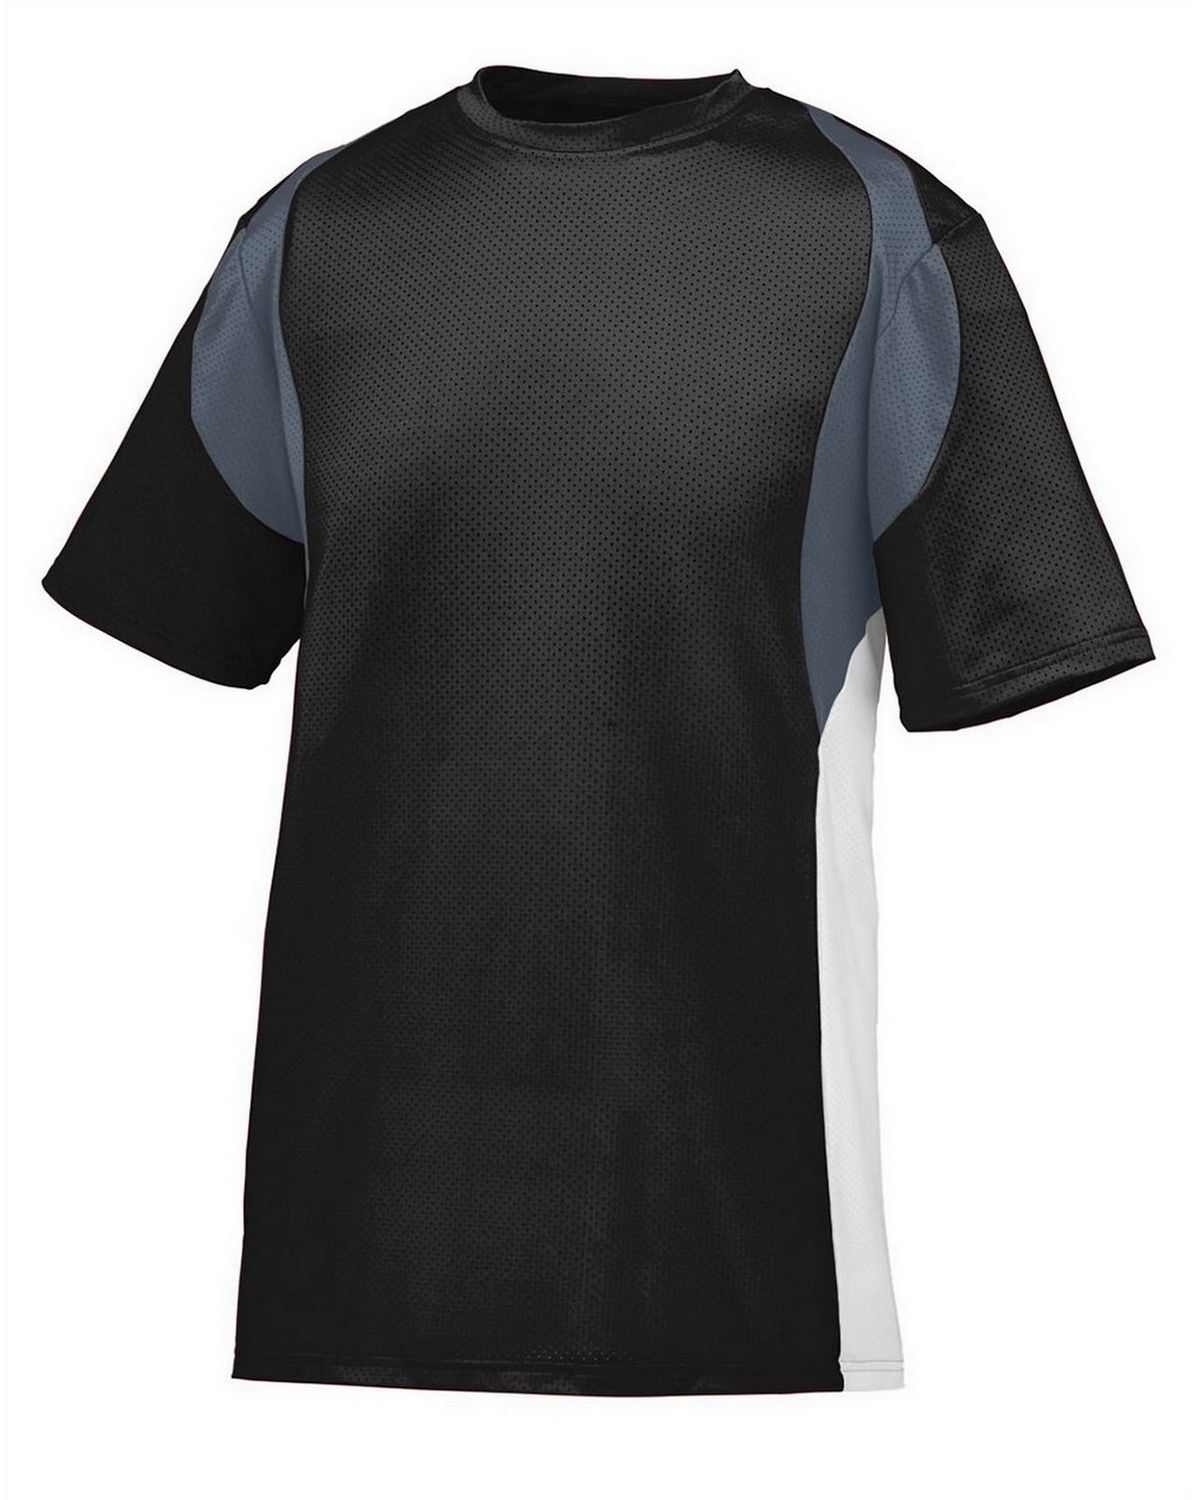 Augusta Sportswear 1515 Men's Wicking Short-Sleeve Jersey